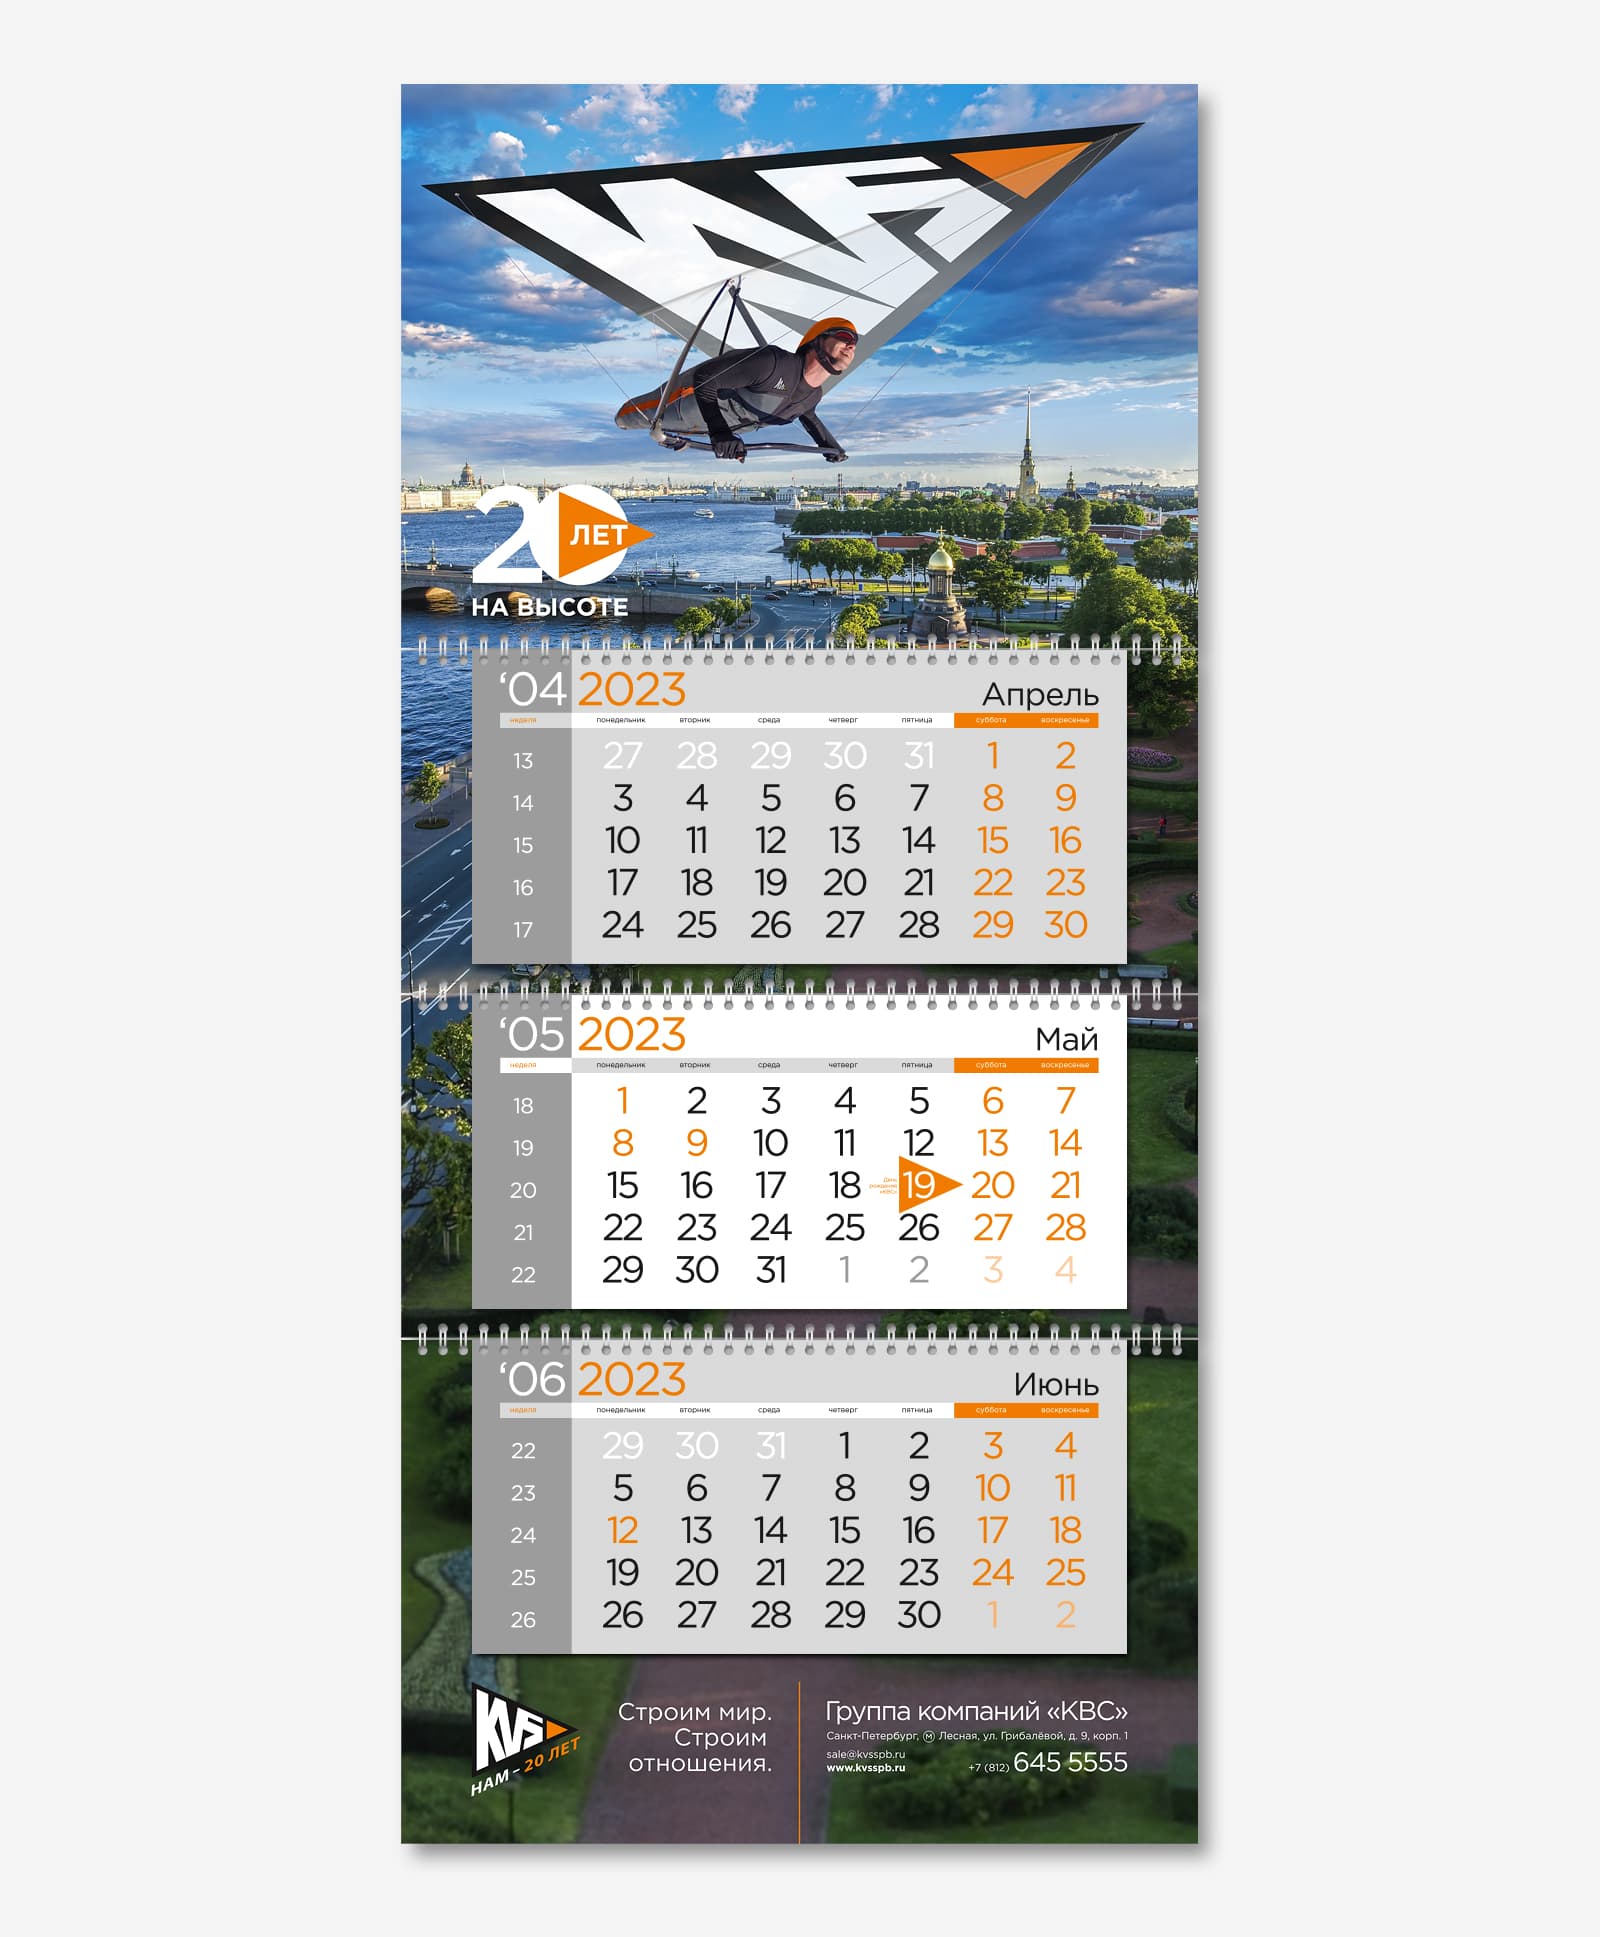 Компания «КВС» воспарила над Санкт-Петербургом в своем корпоративном календаре Трио на 2023 год